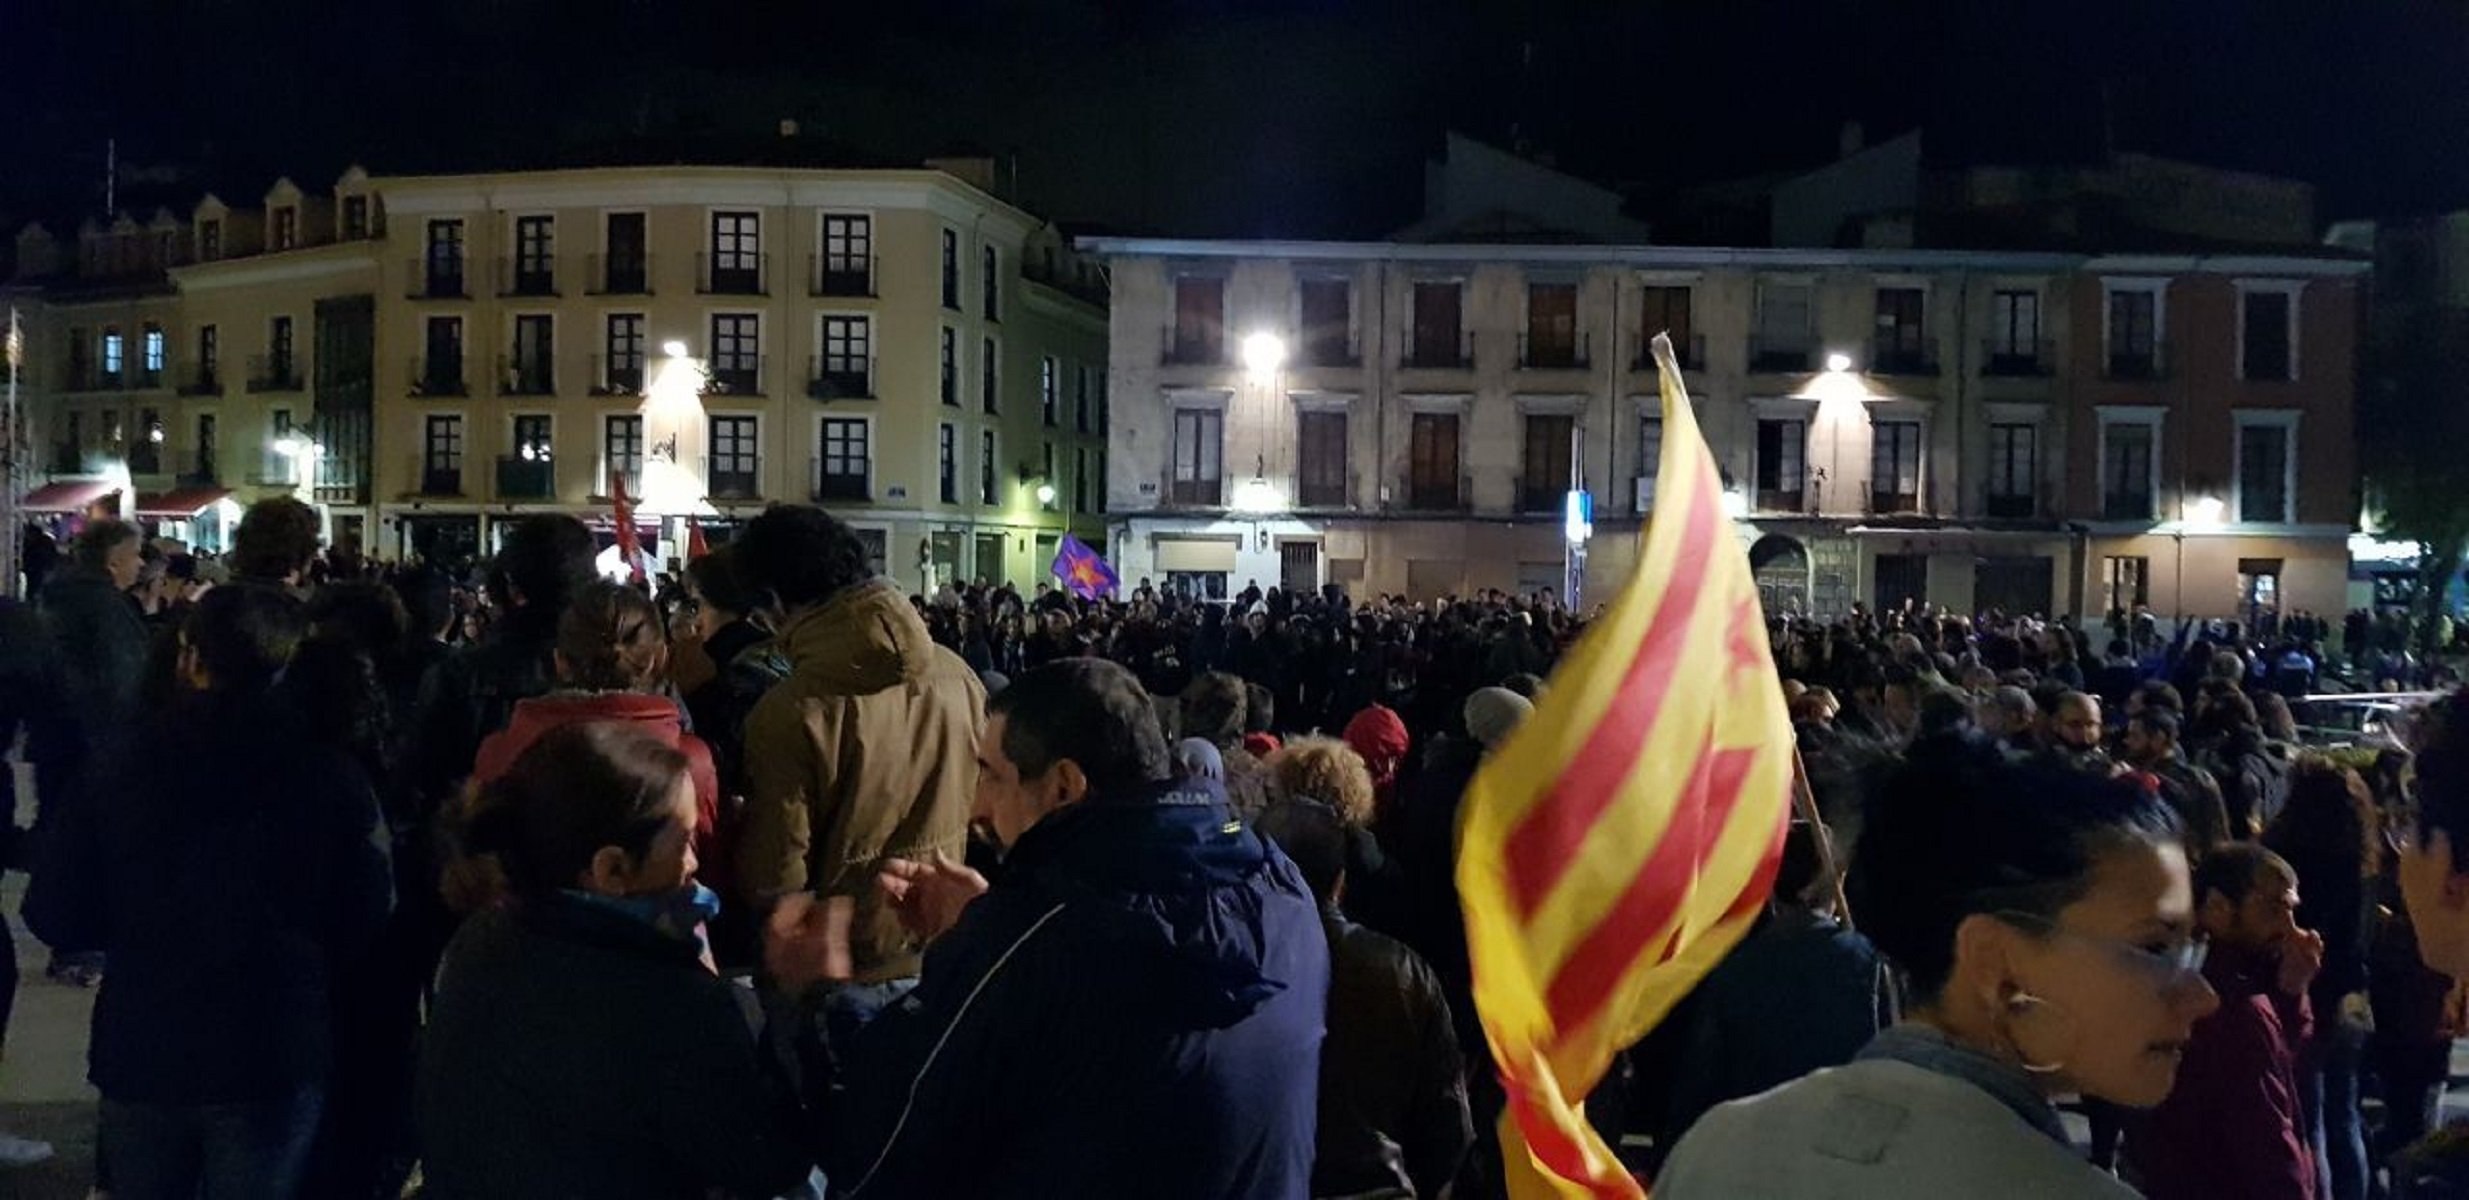 Diverses ciutats espanyoles també es manifesten contra la sentència